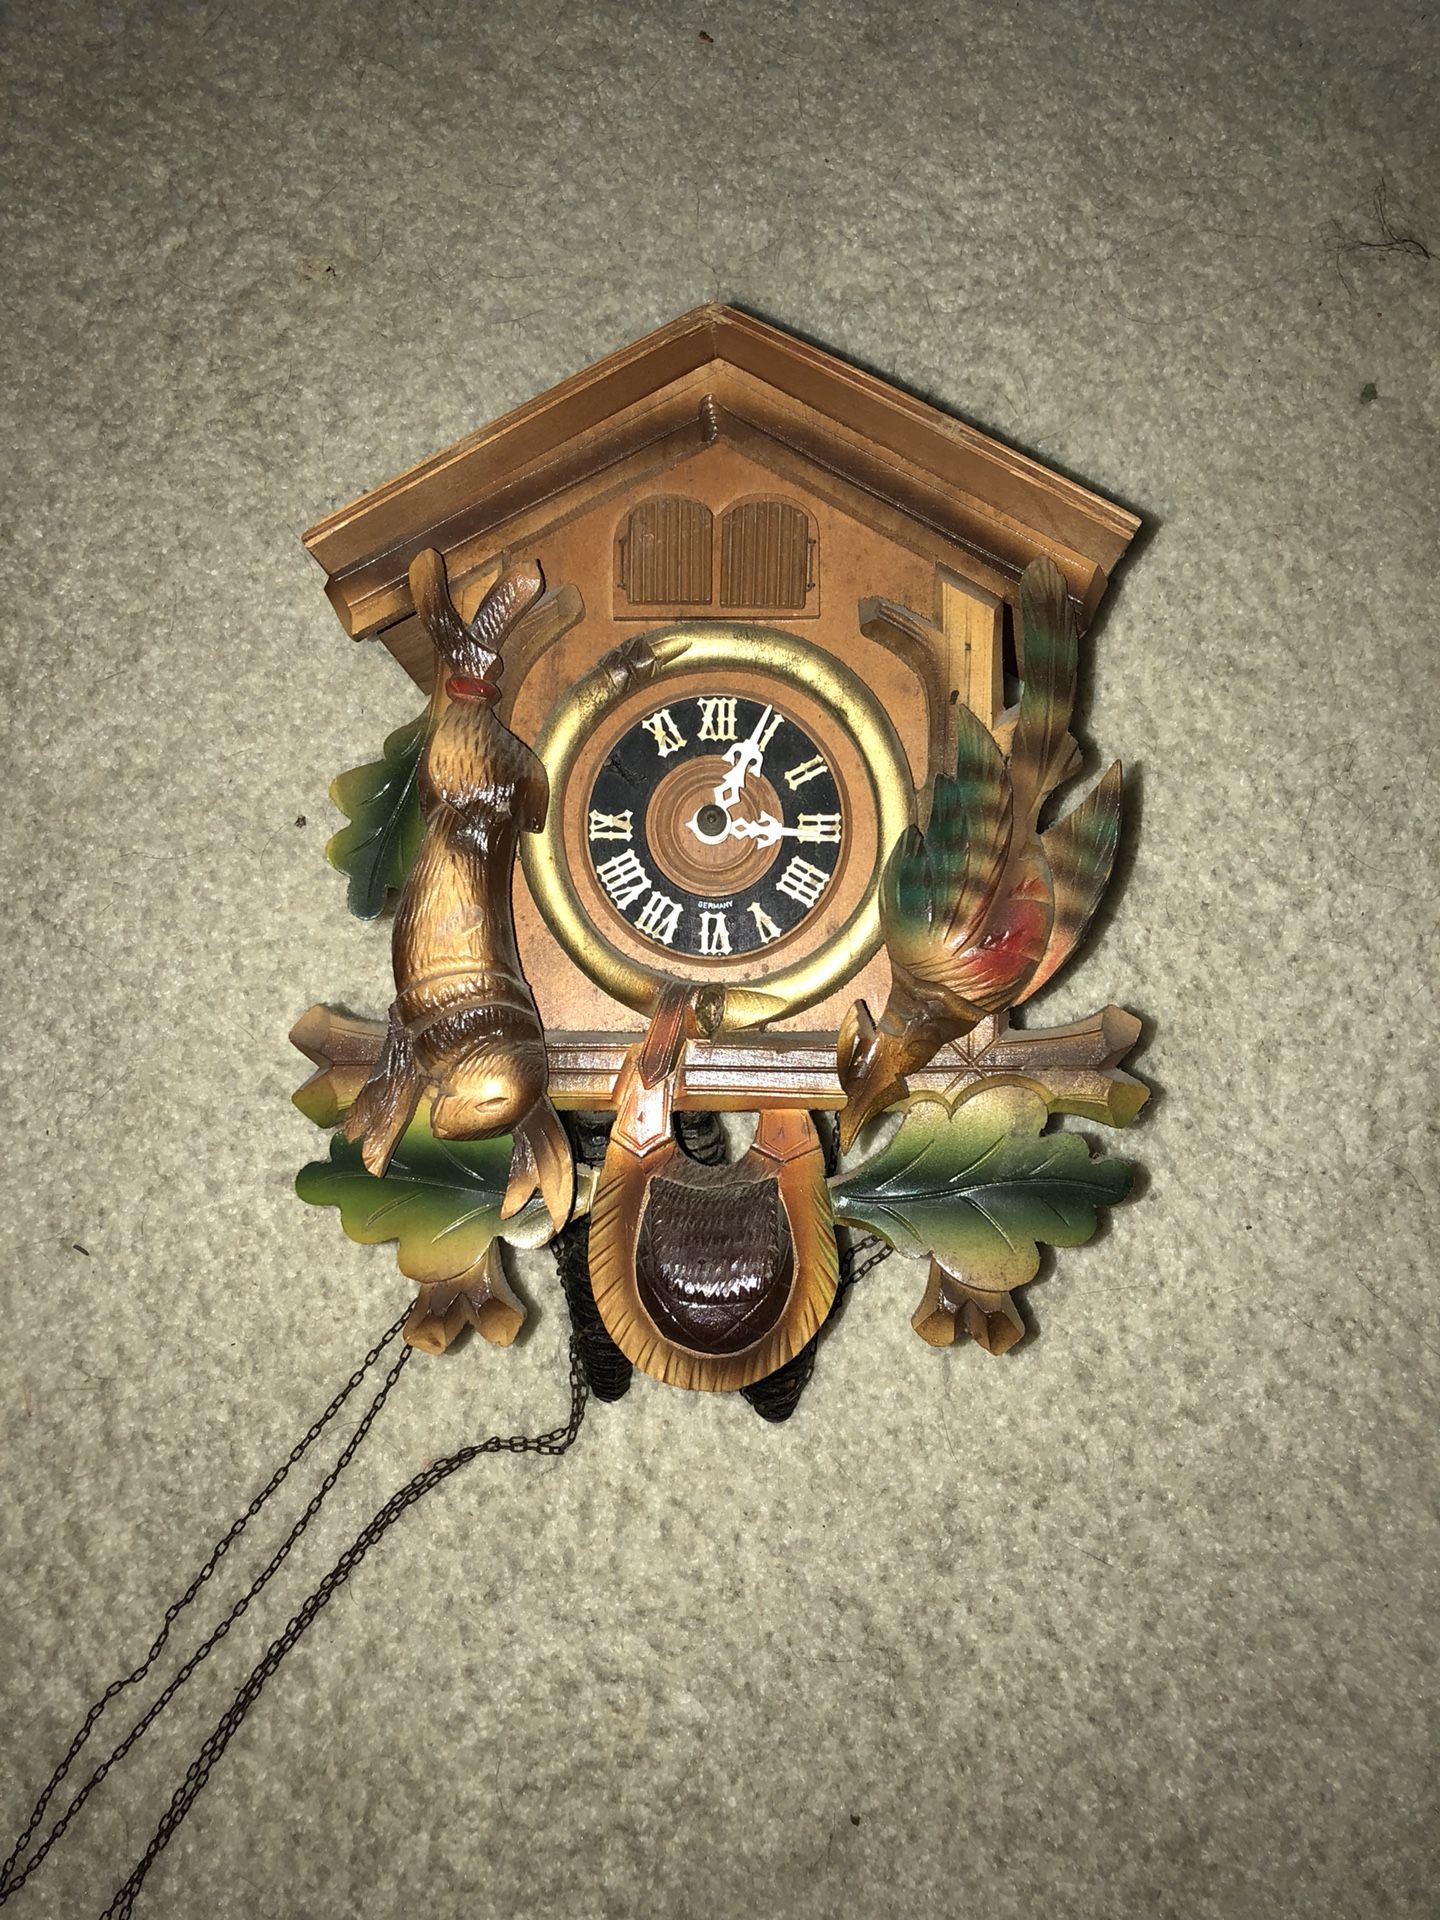 Thorens Antique Cuckoo clock